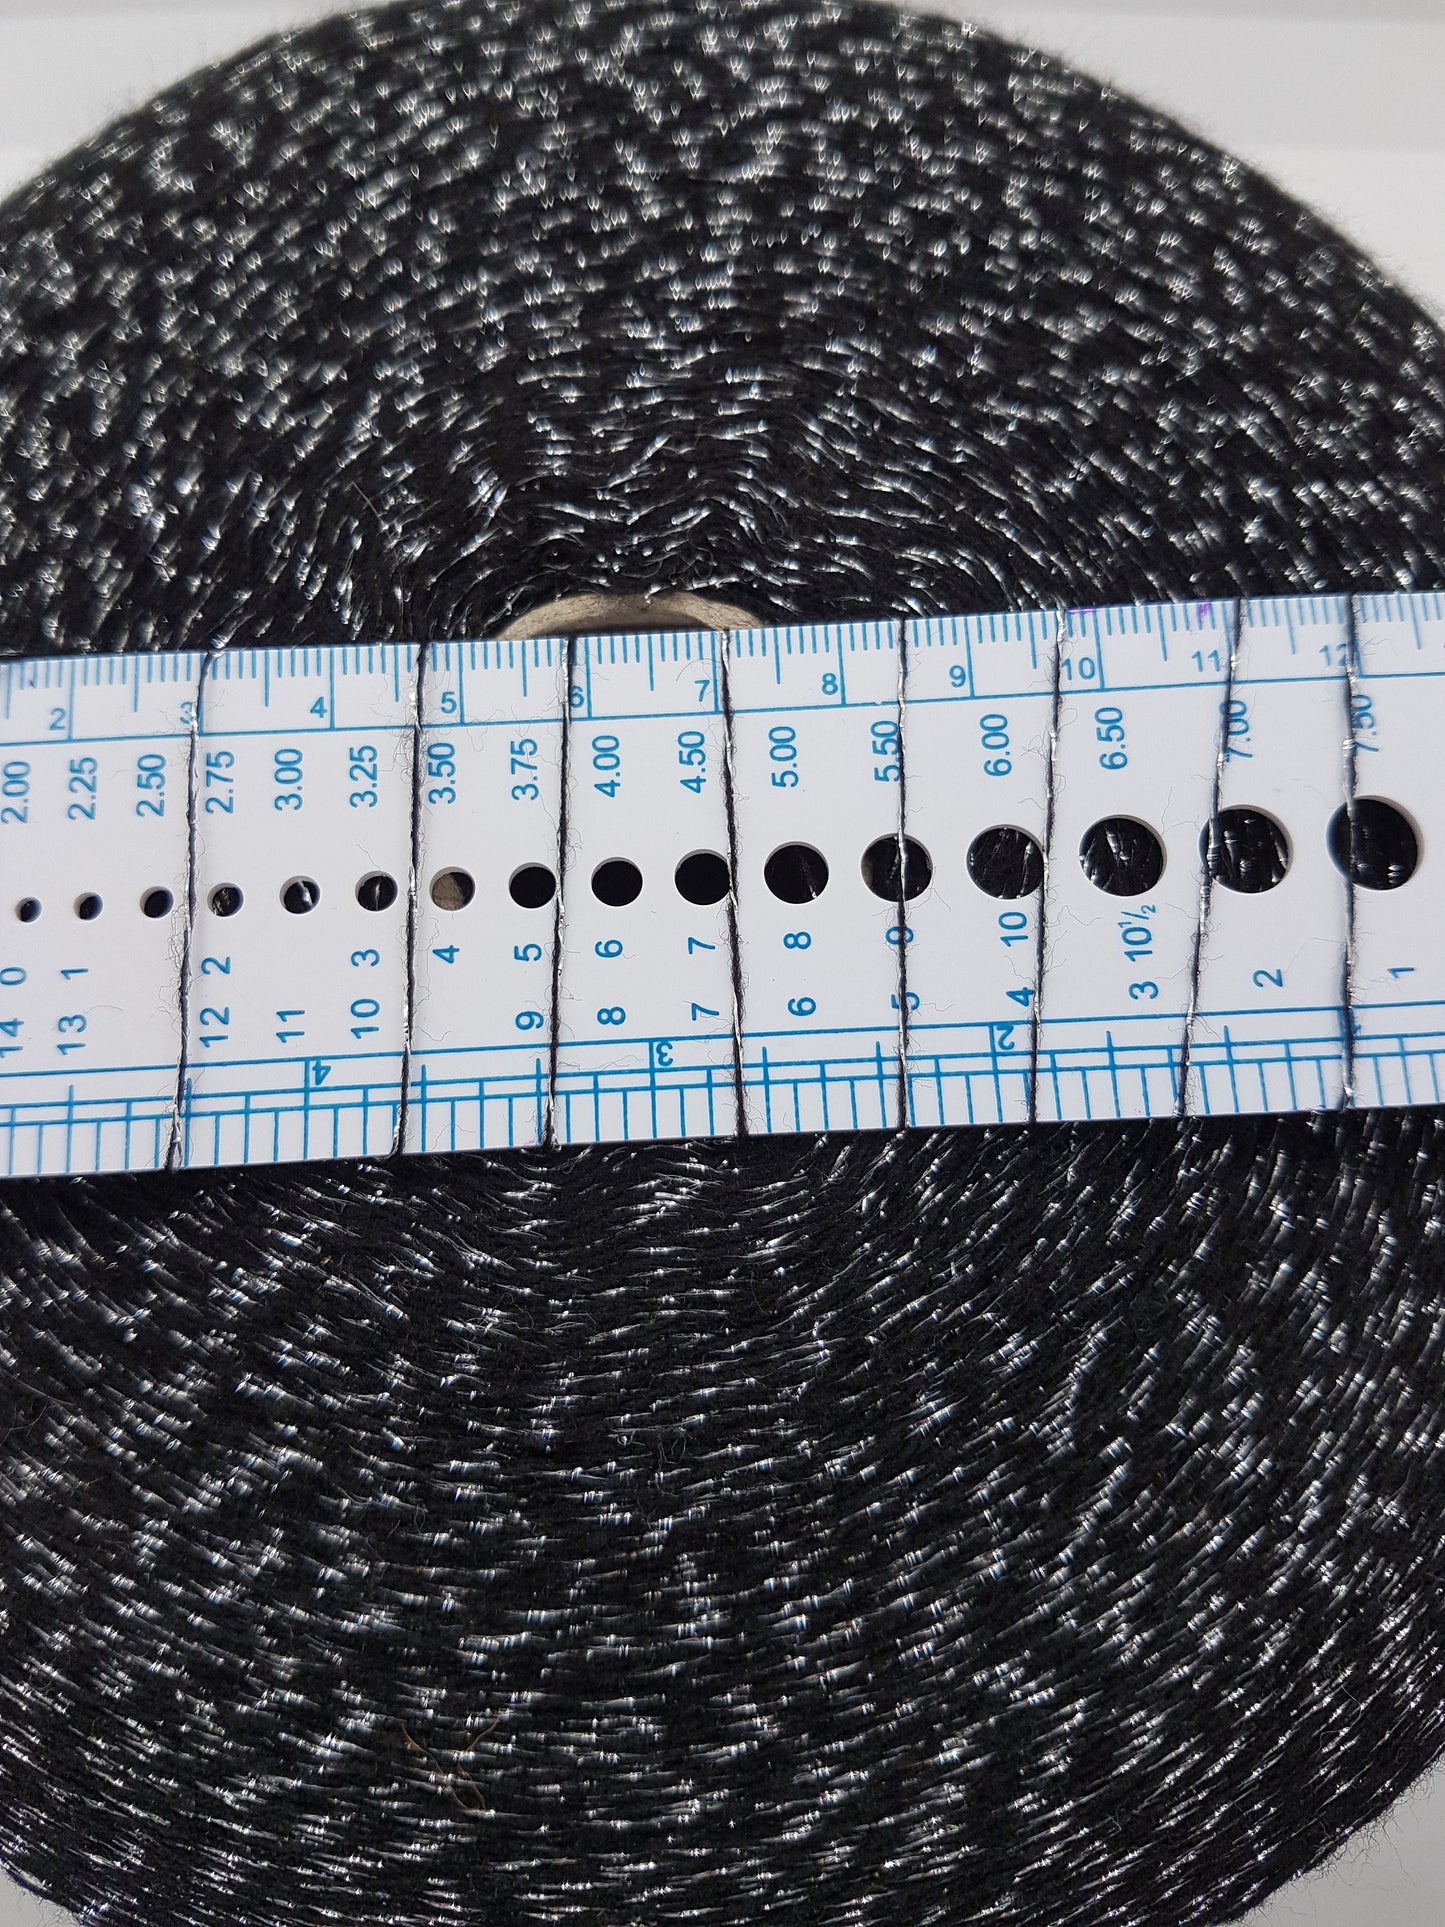 25-50-100g Wool Lurex Italian Knitting Yarn color Black&Silver N.34